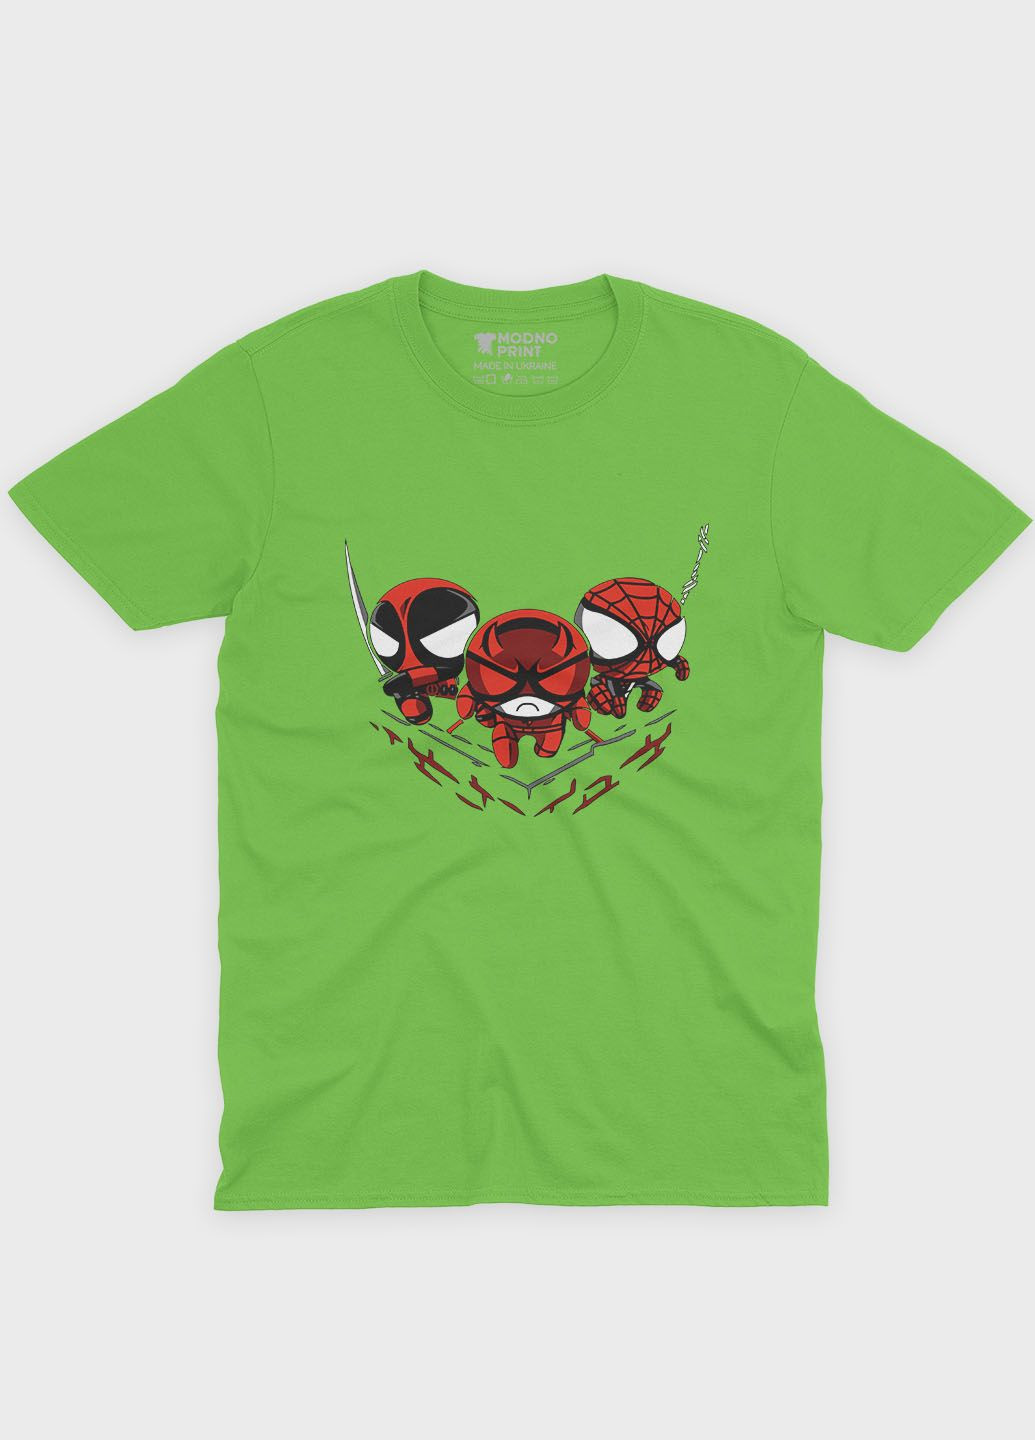 Салатовая демисезонная футболка для девочки с принтом супергероя - человек-паук (ts001-1-kiw-006-014-069-g) Modno